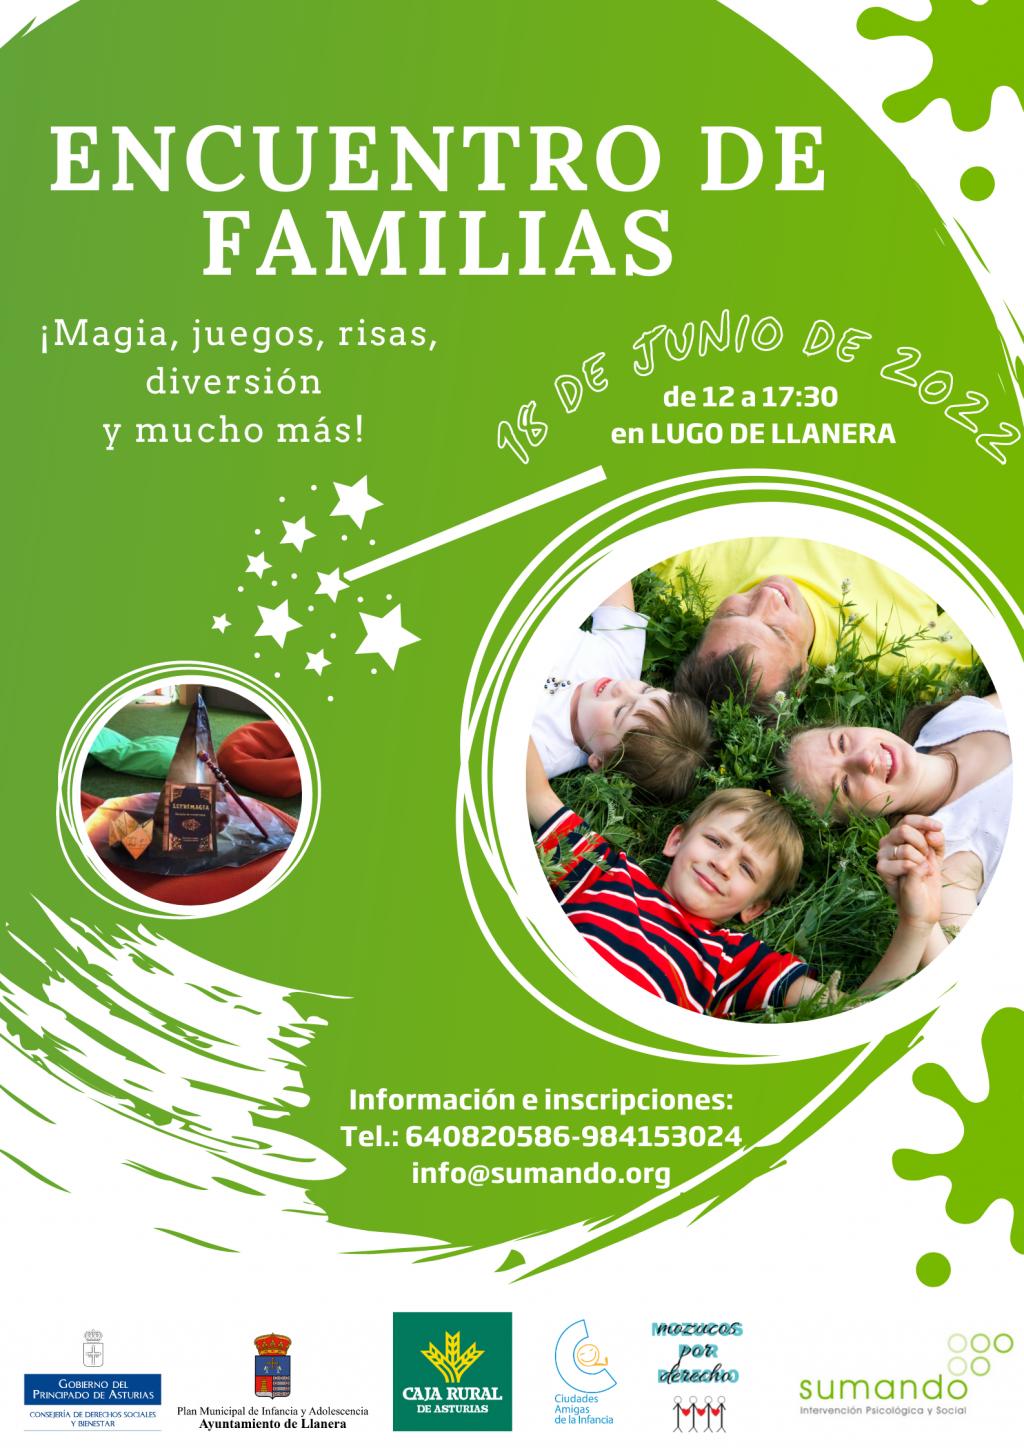 El Tapin - La Asociación Sumando organiza el Encuentro de Familias en el colegio de Lugo el sábado 18 de junio 